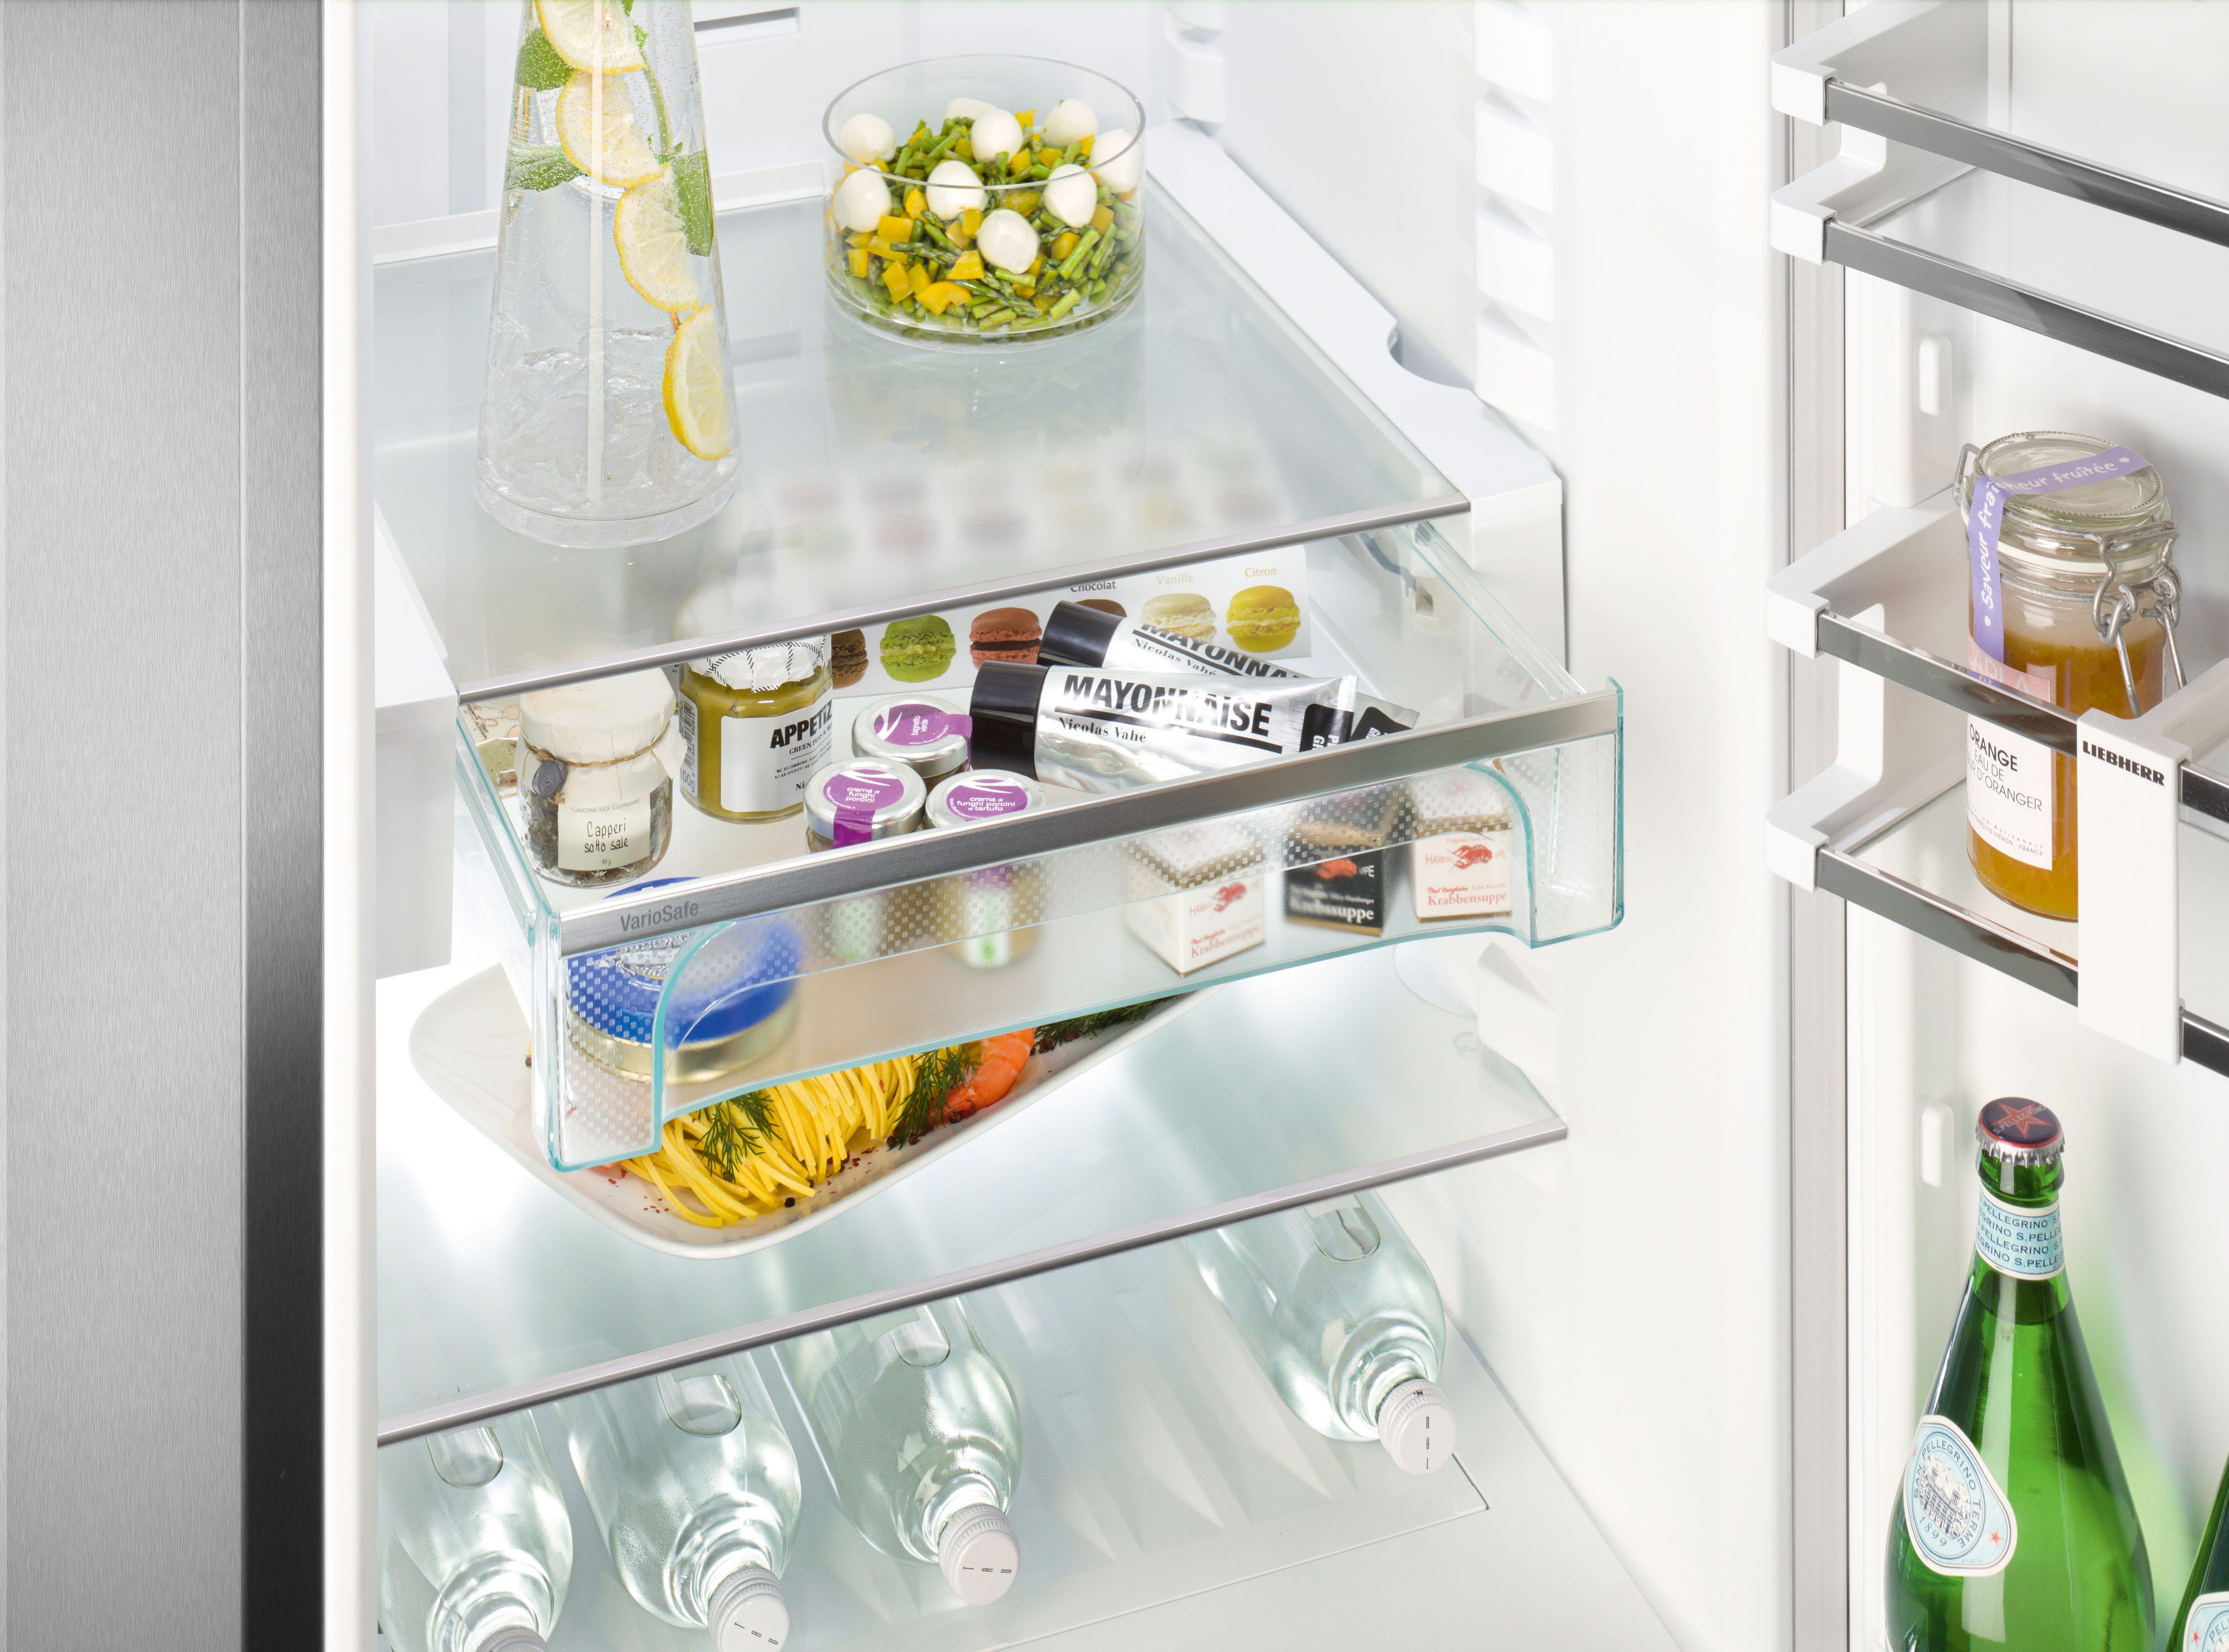 Pimp my Kühlschrank: So finden Sie Ihr passendes Zubehör - FreshMAG